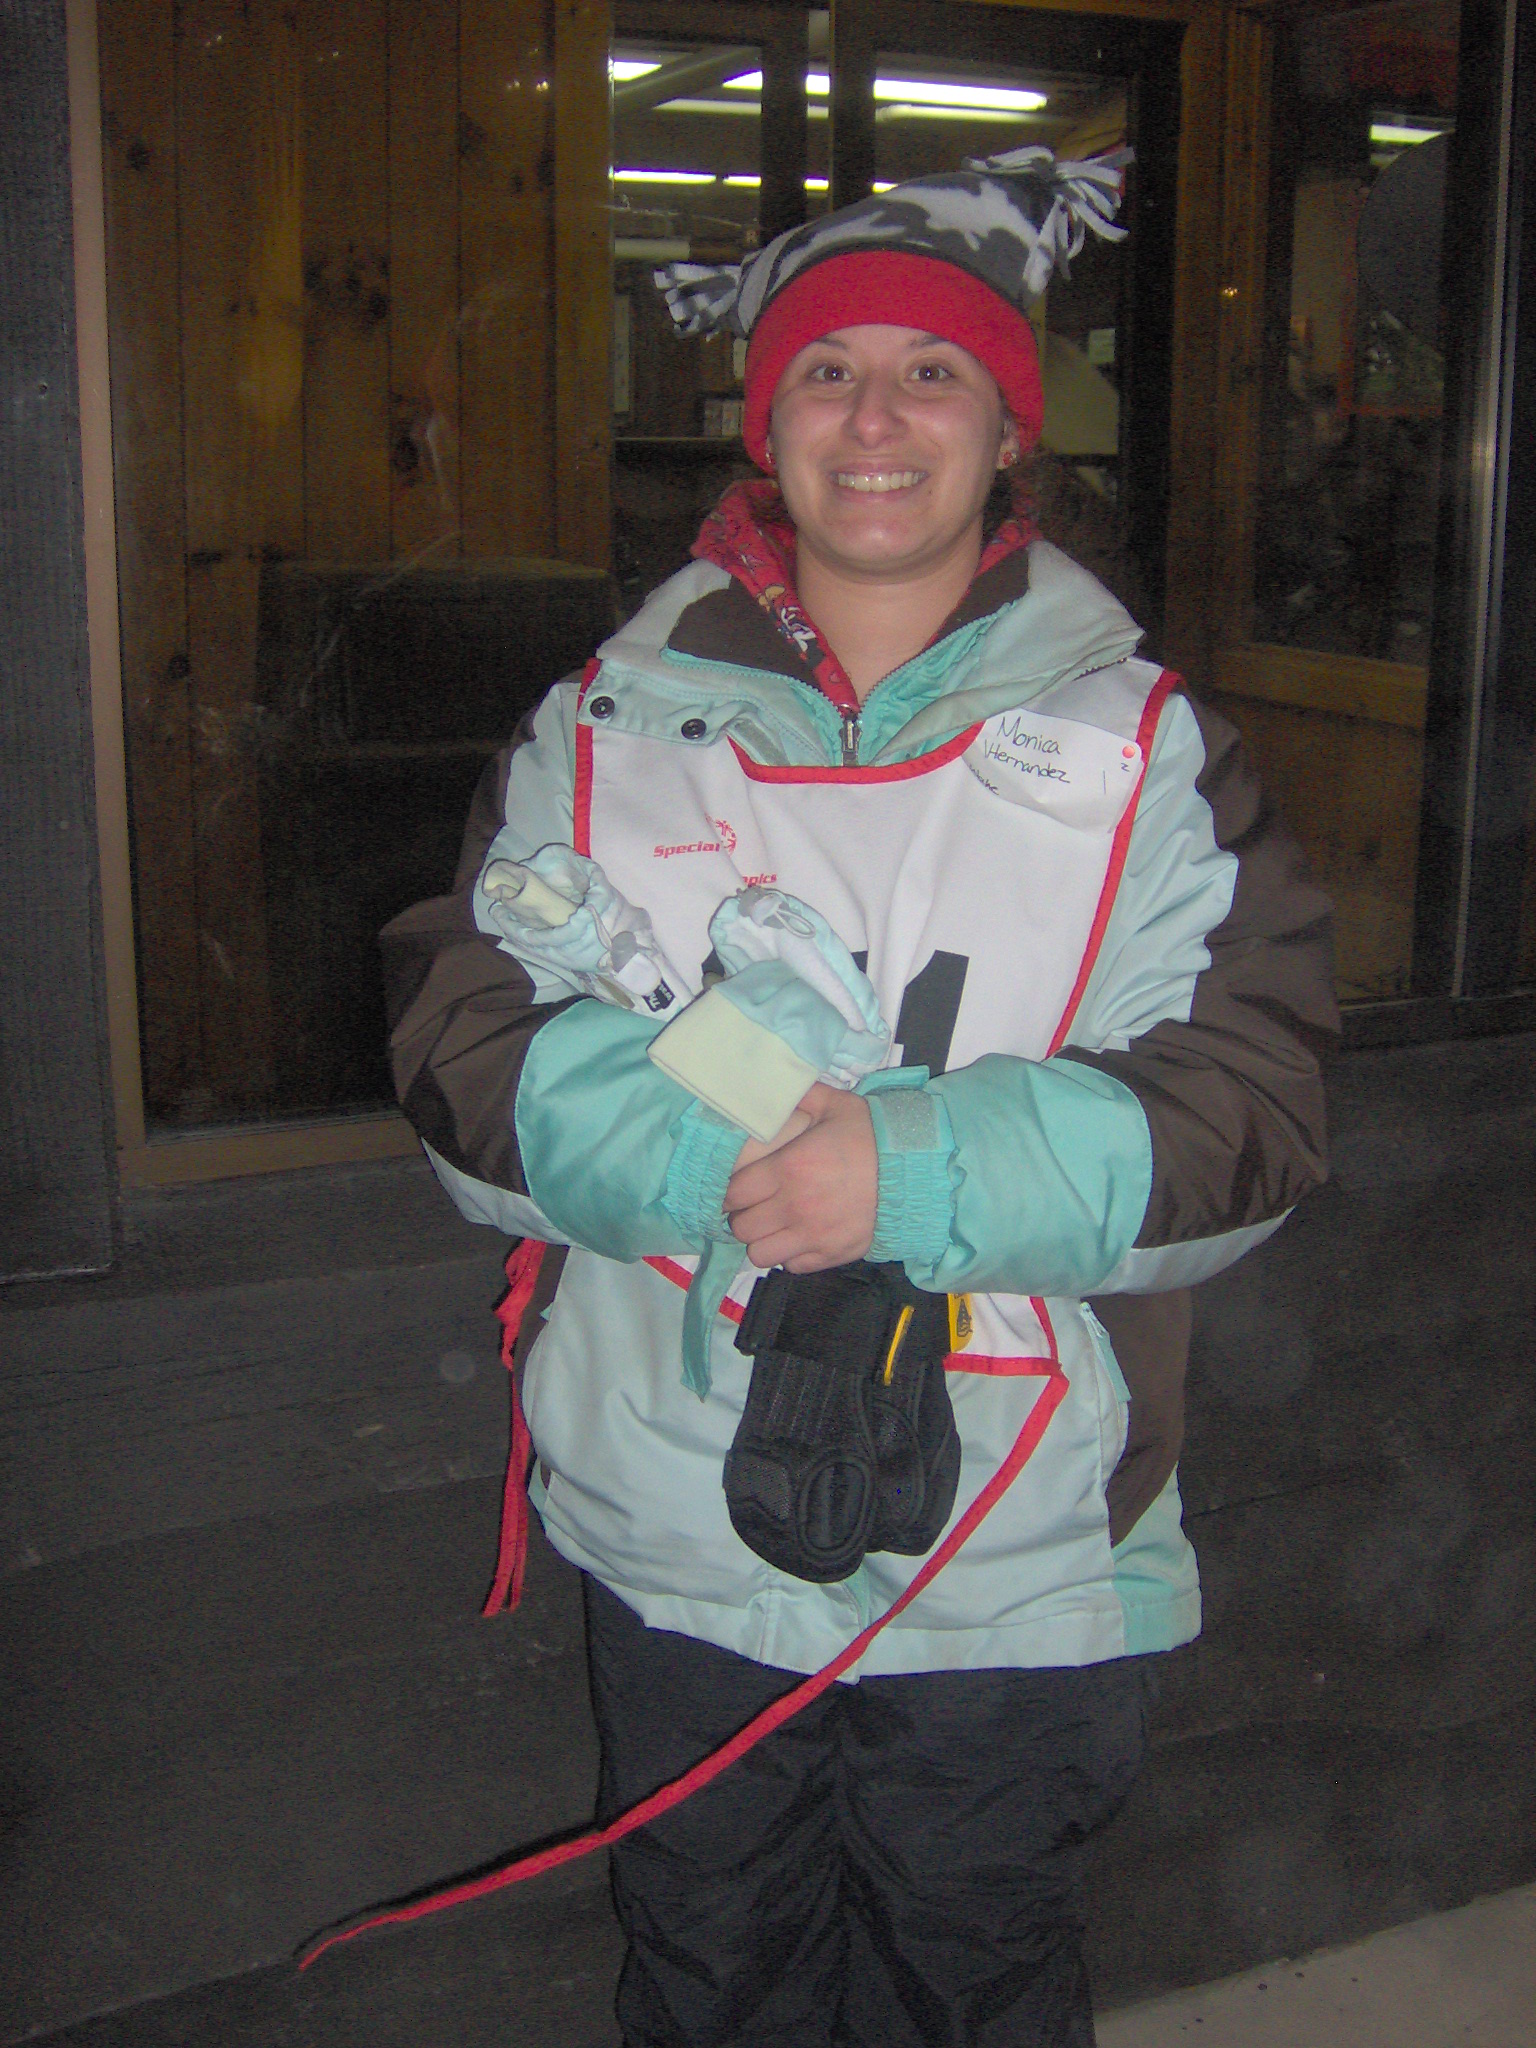 ./2009/Special Olympics Skiing/V20090029.JPG